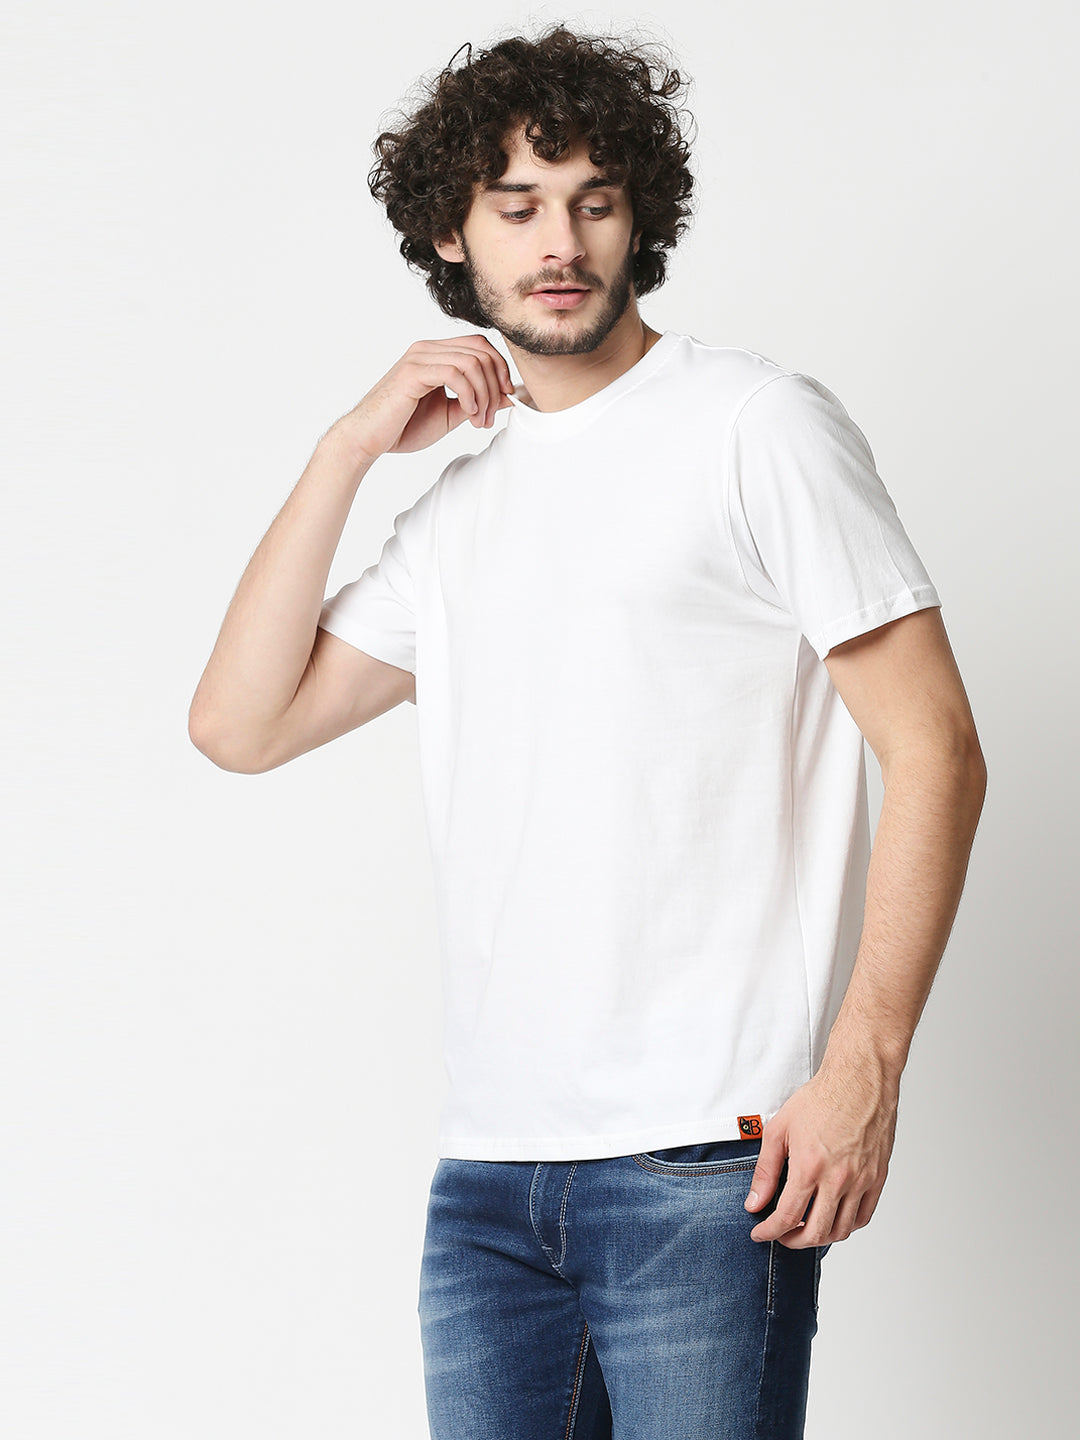 Buy Men's Comfort fit back print T-shirt.